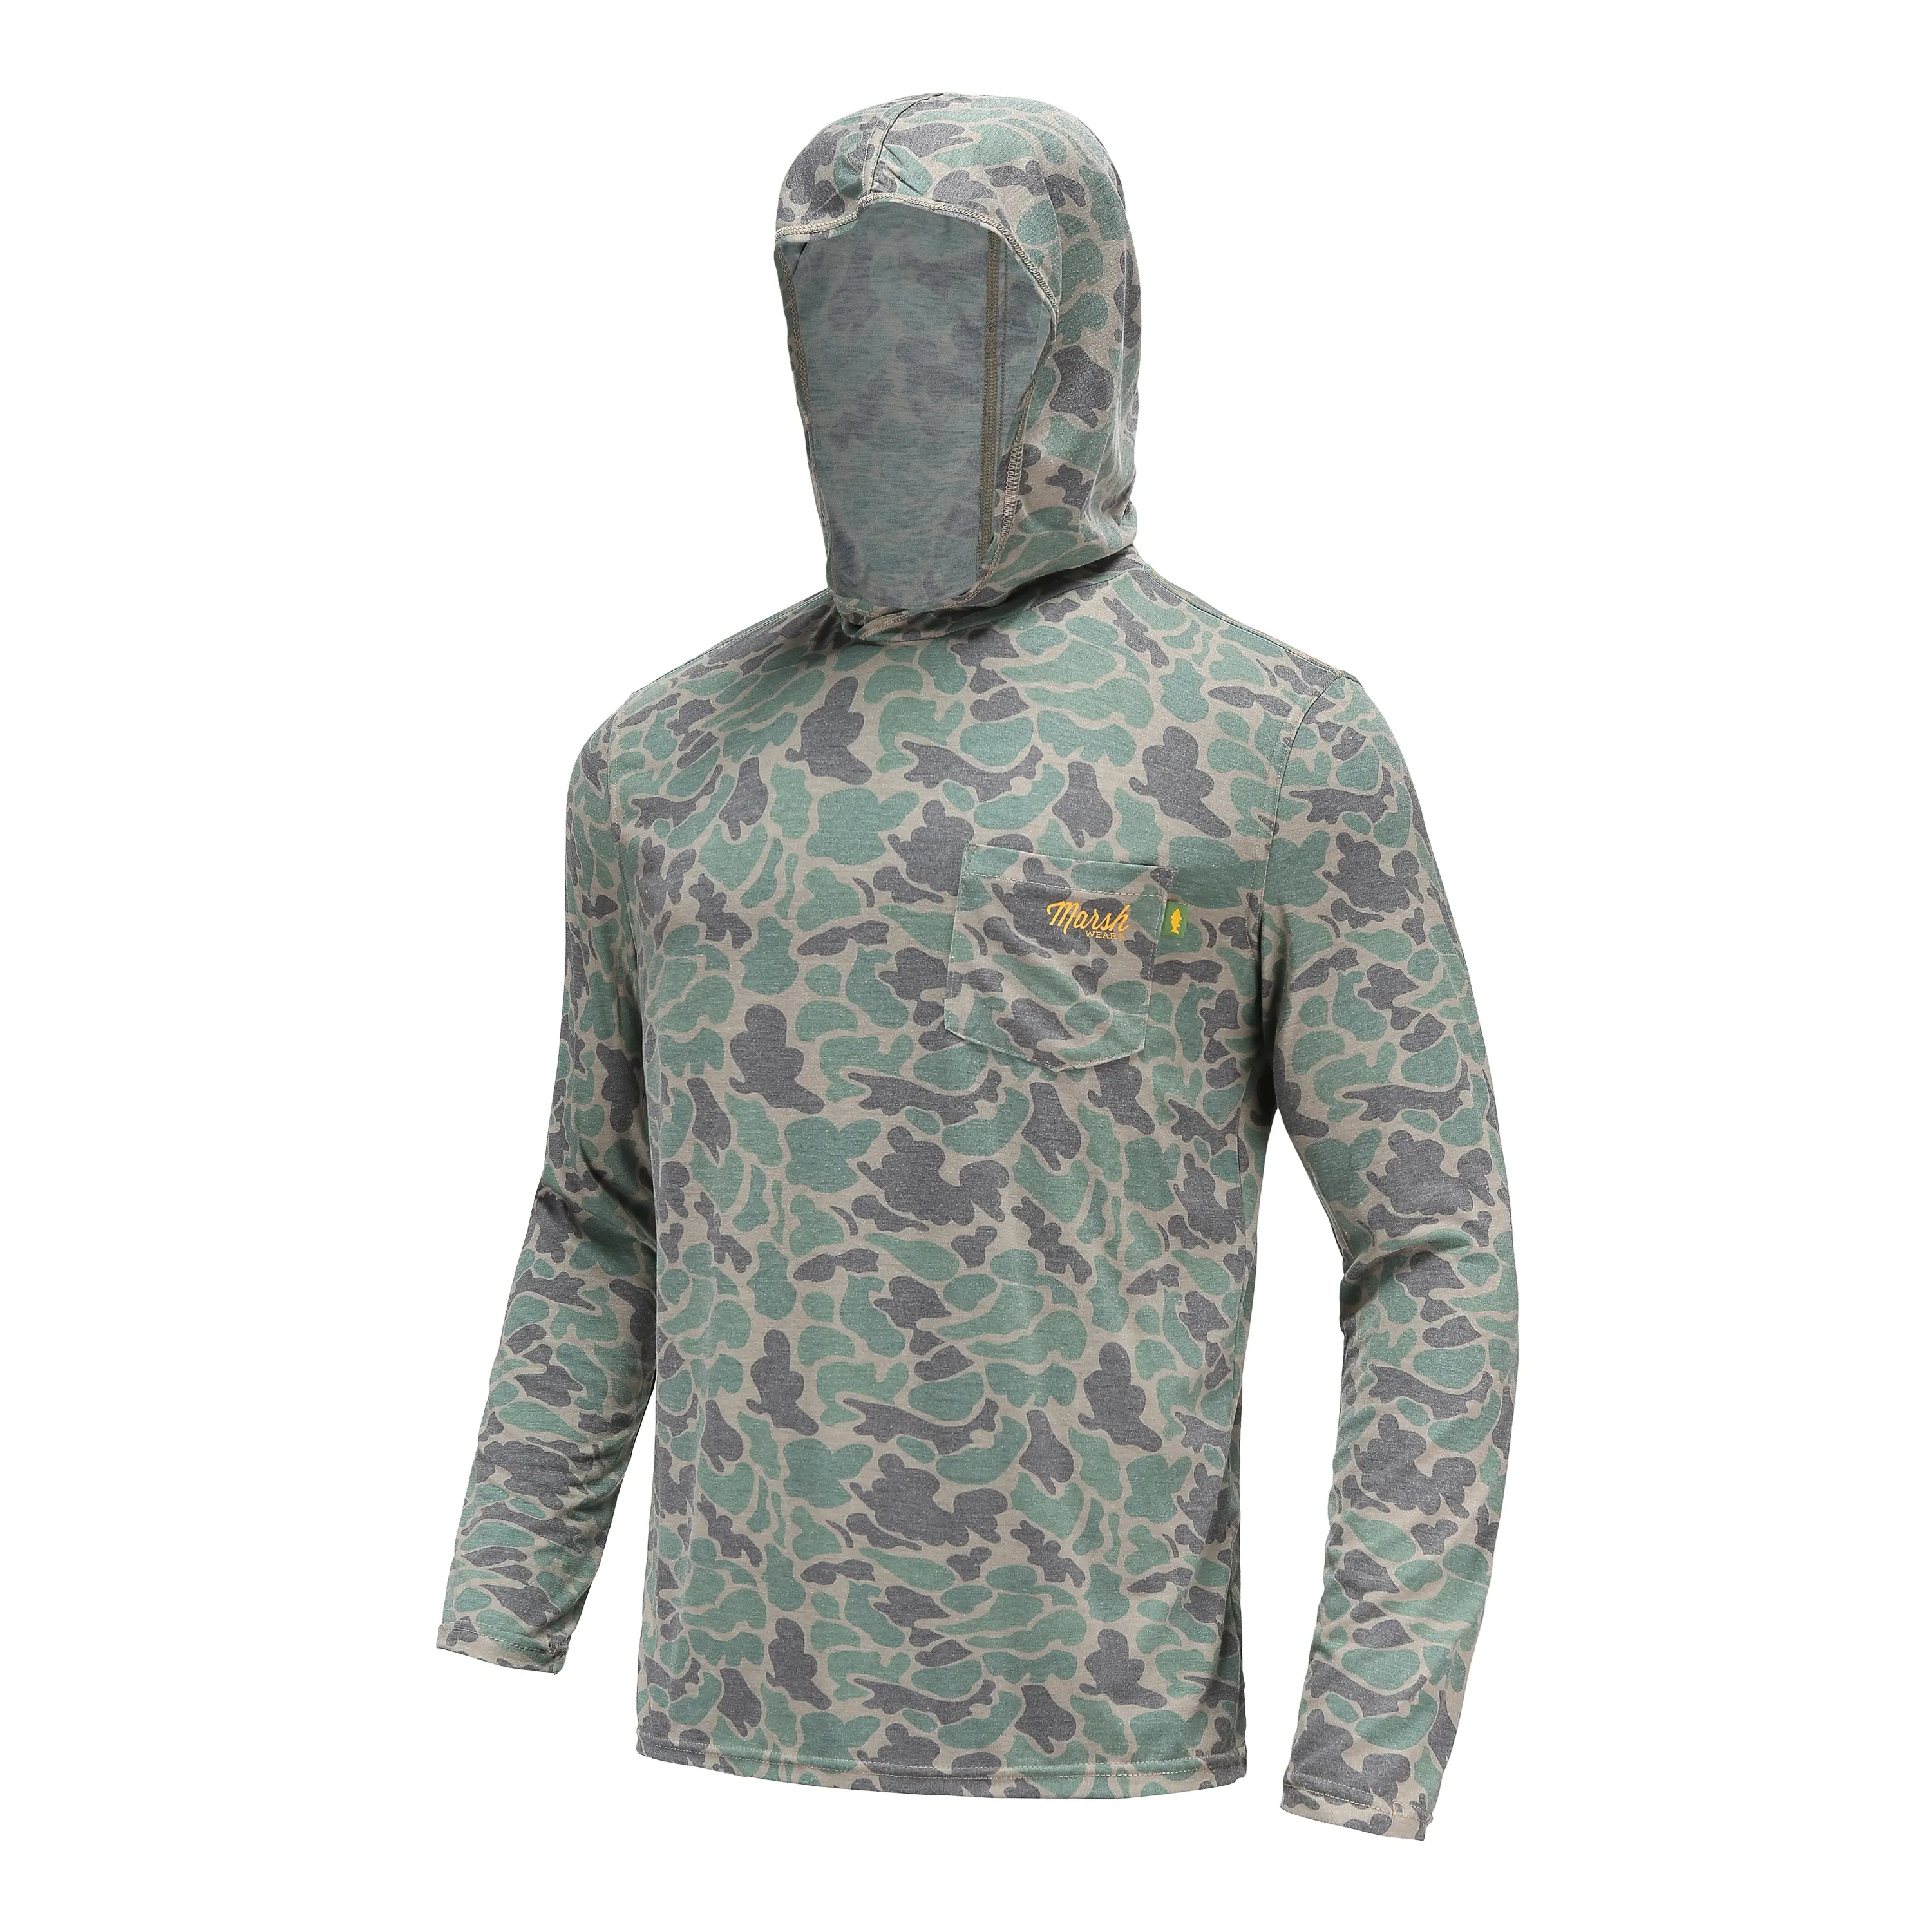 wholesale Camo fishing shirts with hood sublimated long sleeve fishing shirts Marshwear fishing shirt